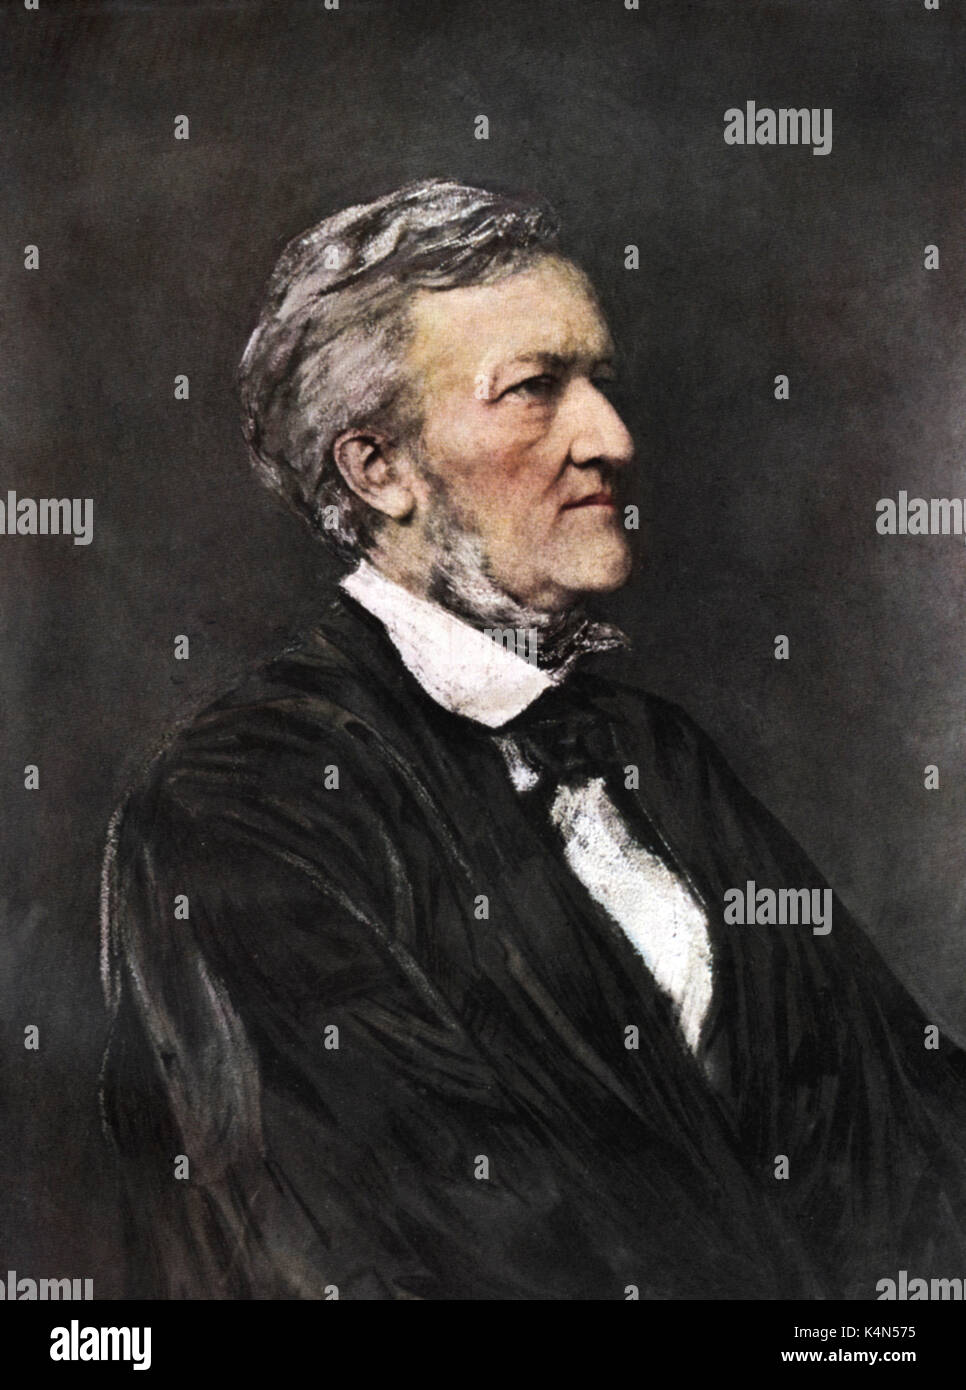 Richard Wagner - Illustrazione da Hubert Herkomer, 1877 del compositore tedesco & autore, 22 maggio 1813 - 13 febbraio 1883. Foto Stock